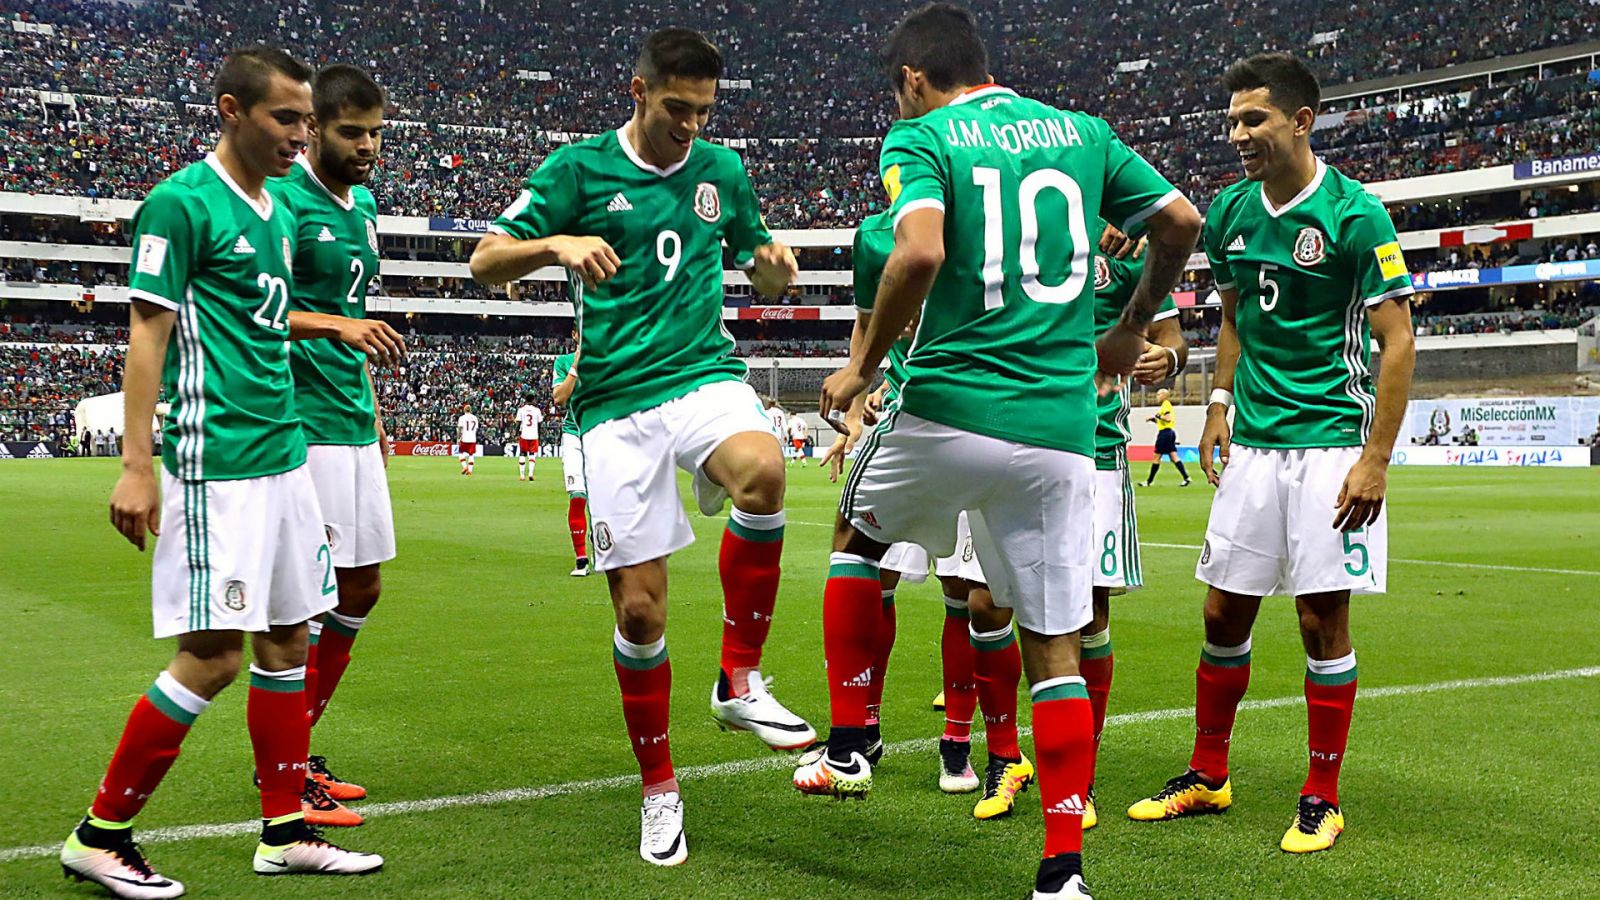 ¿Cómo ver el partido de la Selección Mexicana?